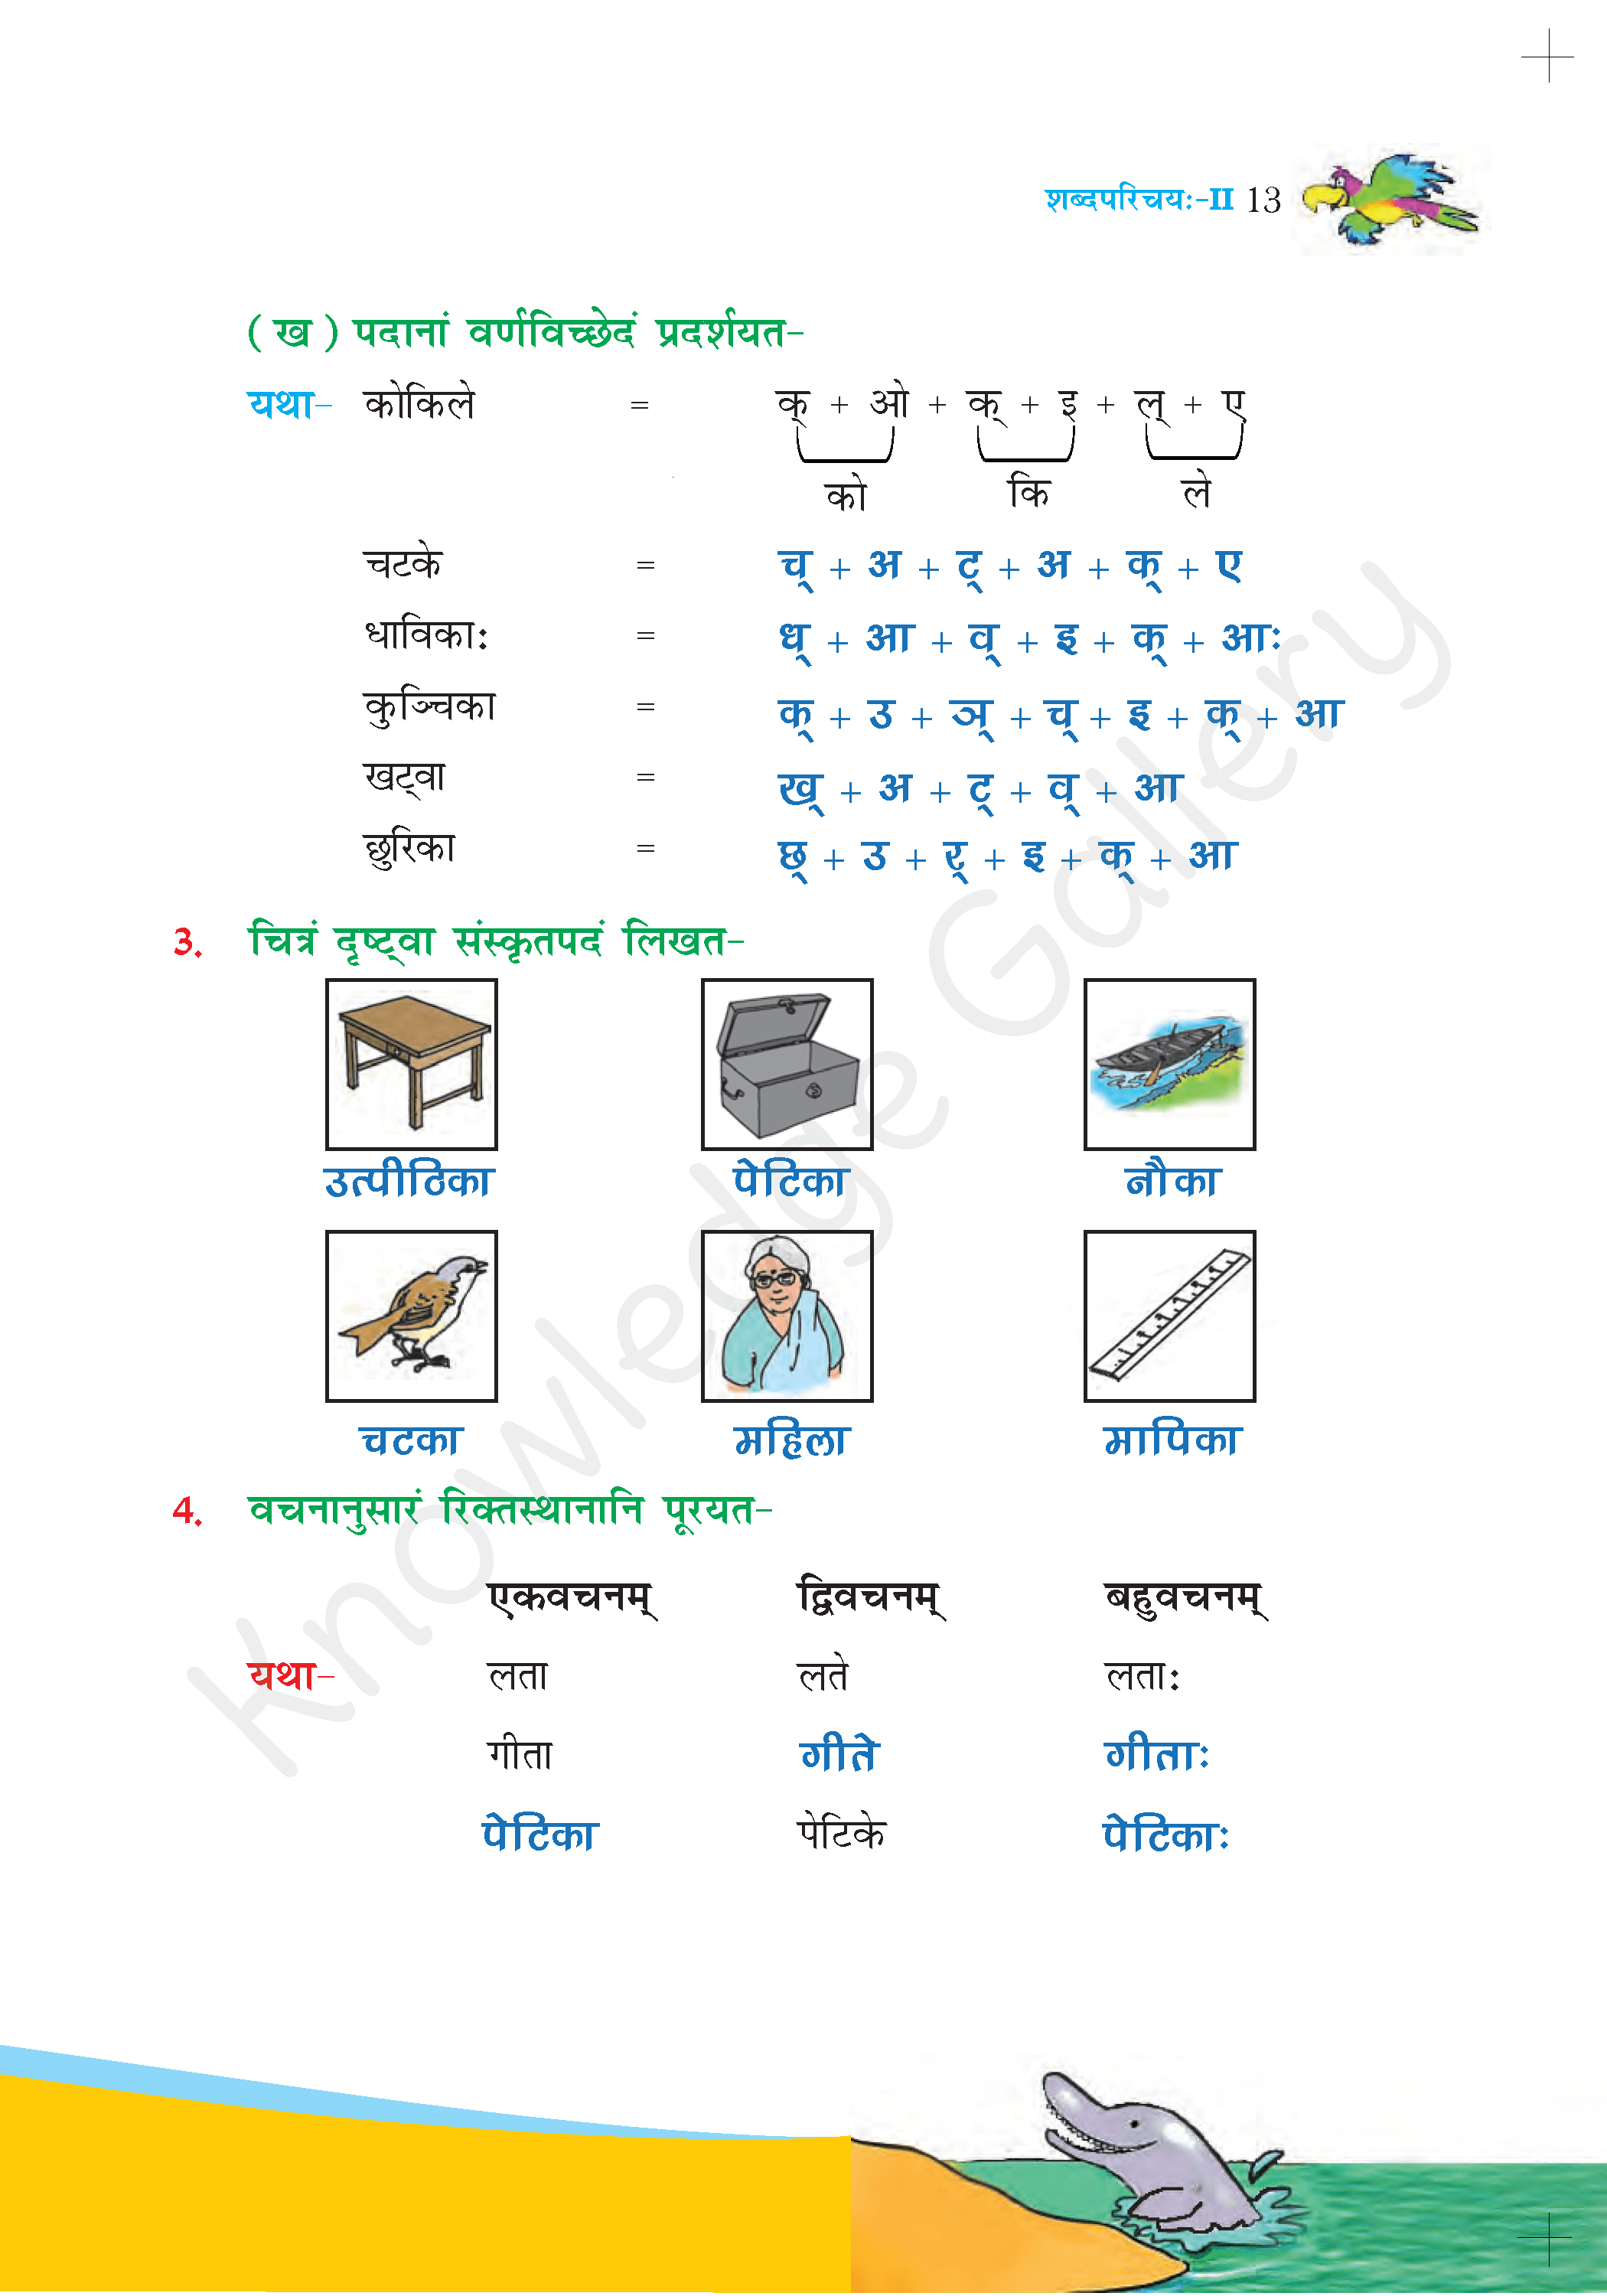 NCERT Solution For Class 6 Sanskrit Chapter 2 part 5